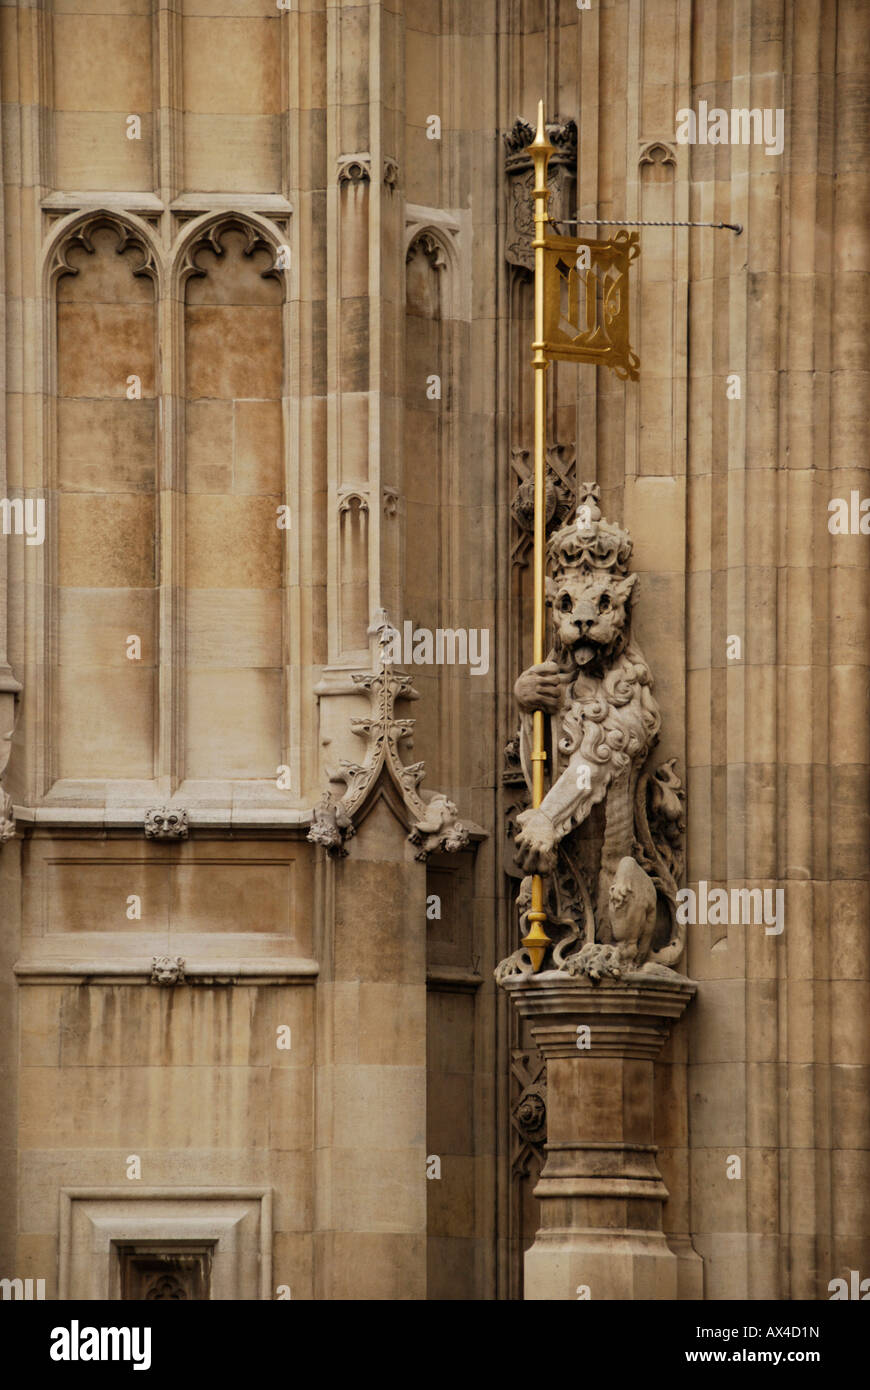 Statue des Löwen mit goldenen Schlüssel außerhalb der Victoria Tower an der Houses of Parlament London Stockfoto